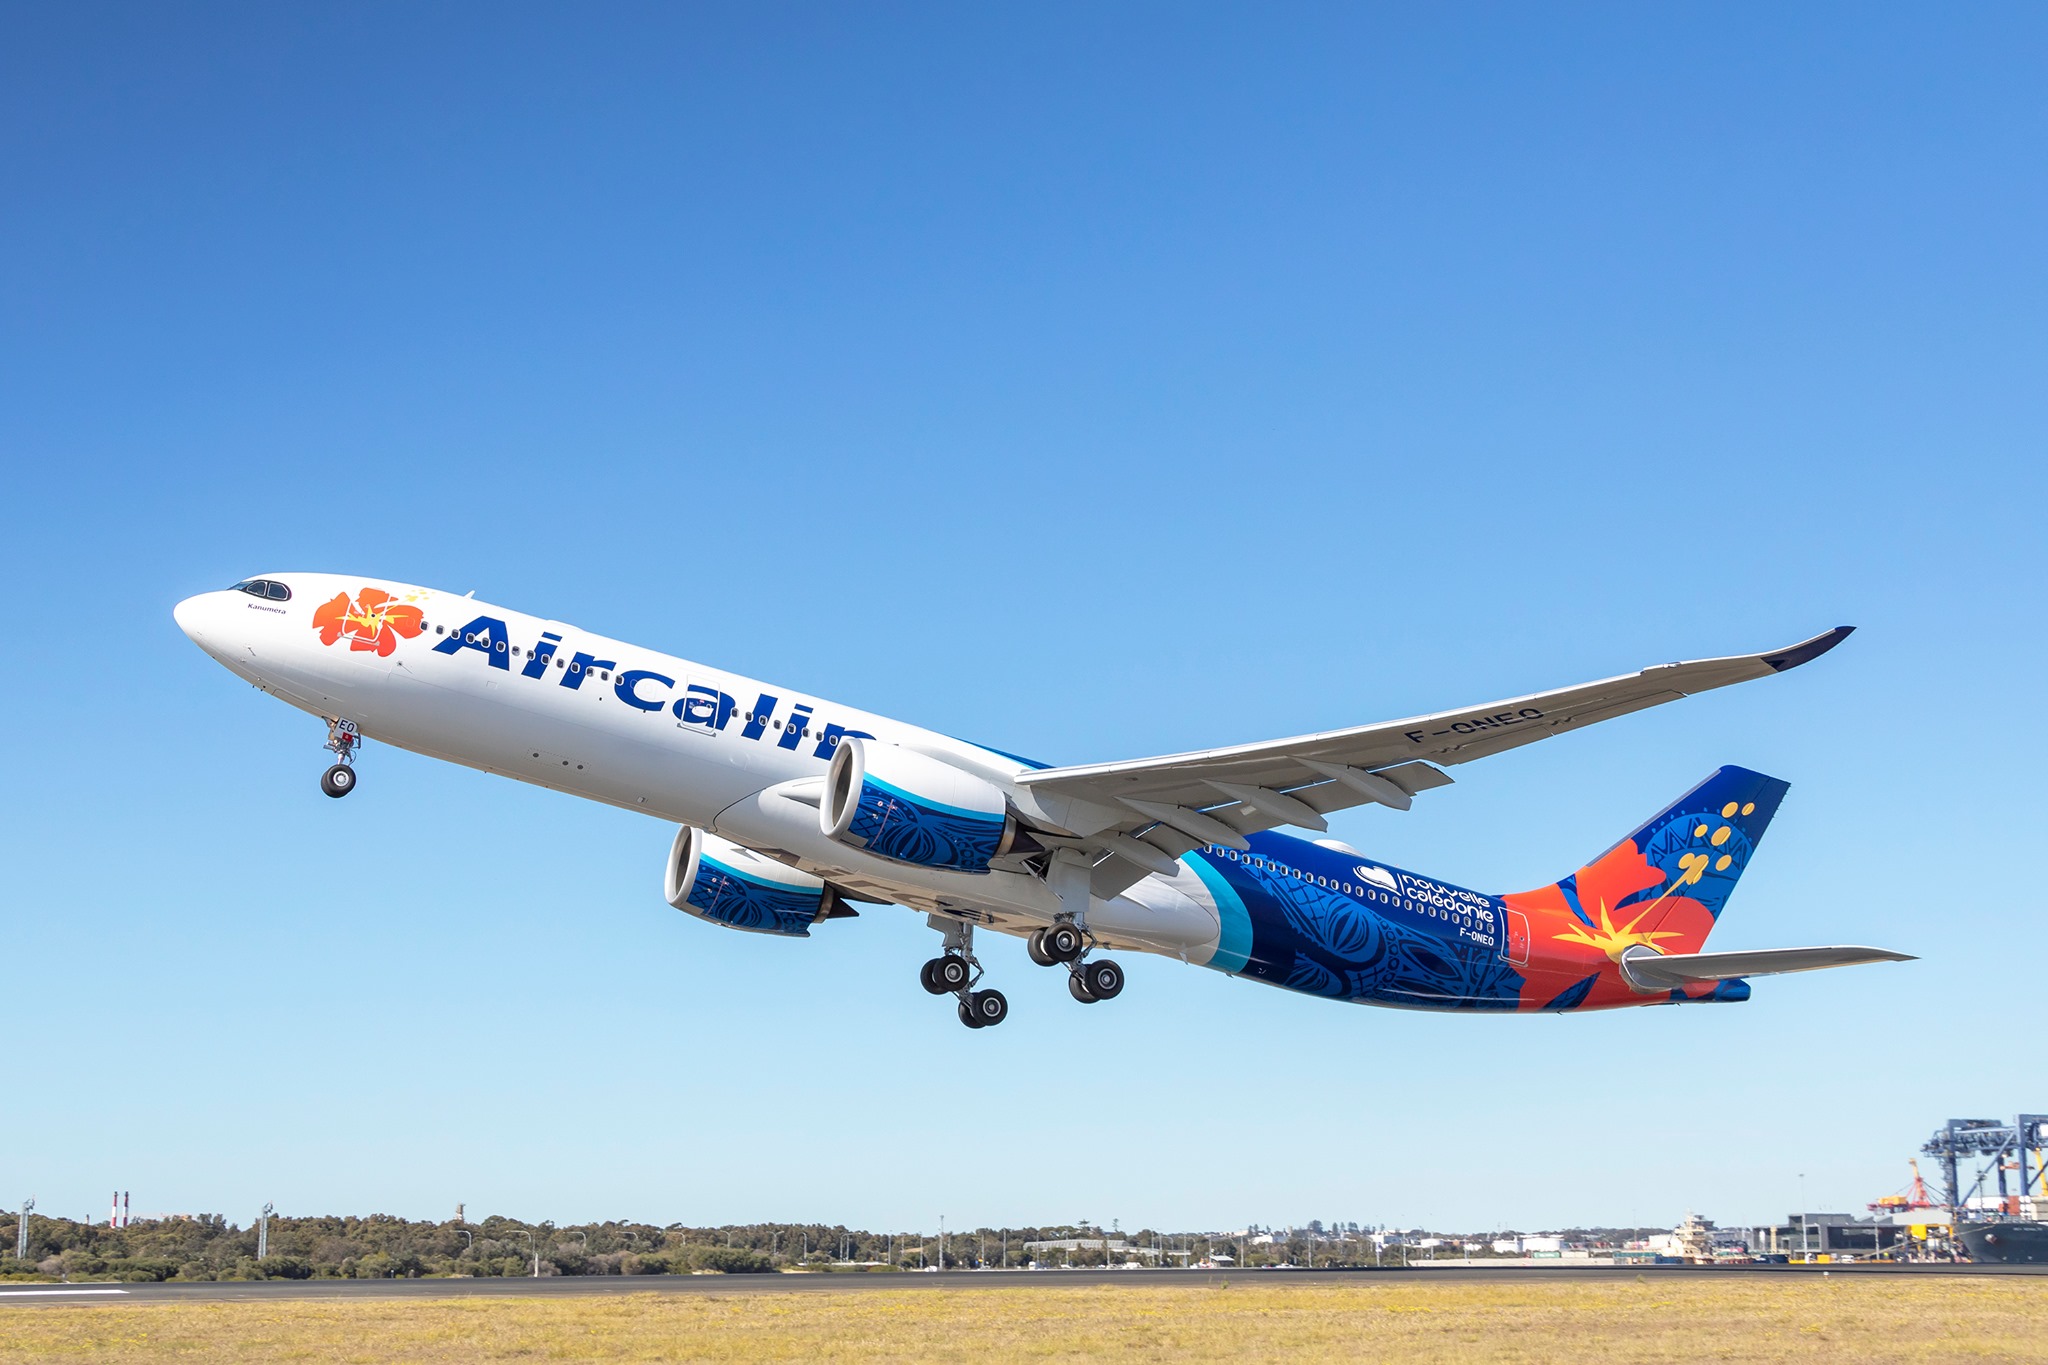 Aircalin arrenda um A319 e um A330 para substituir aeronaves em manutenção